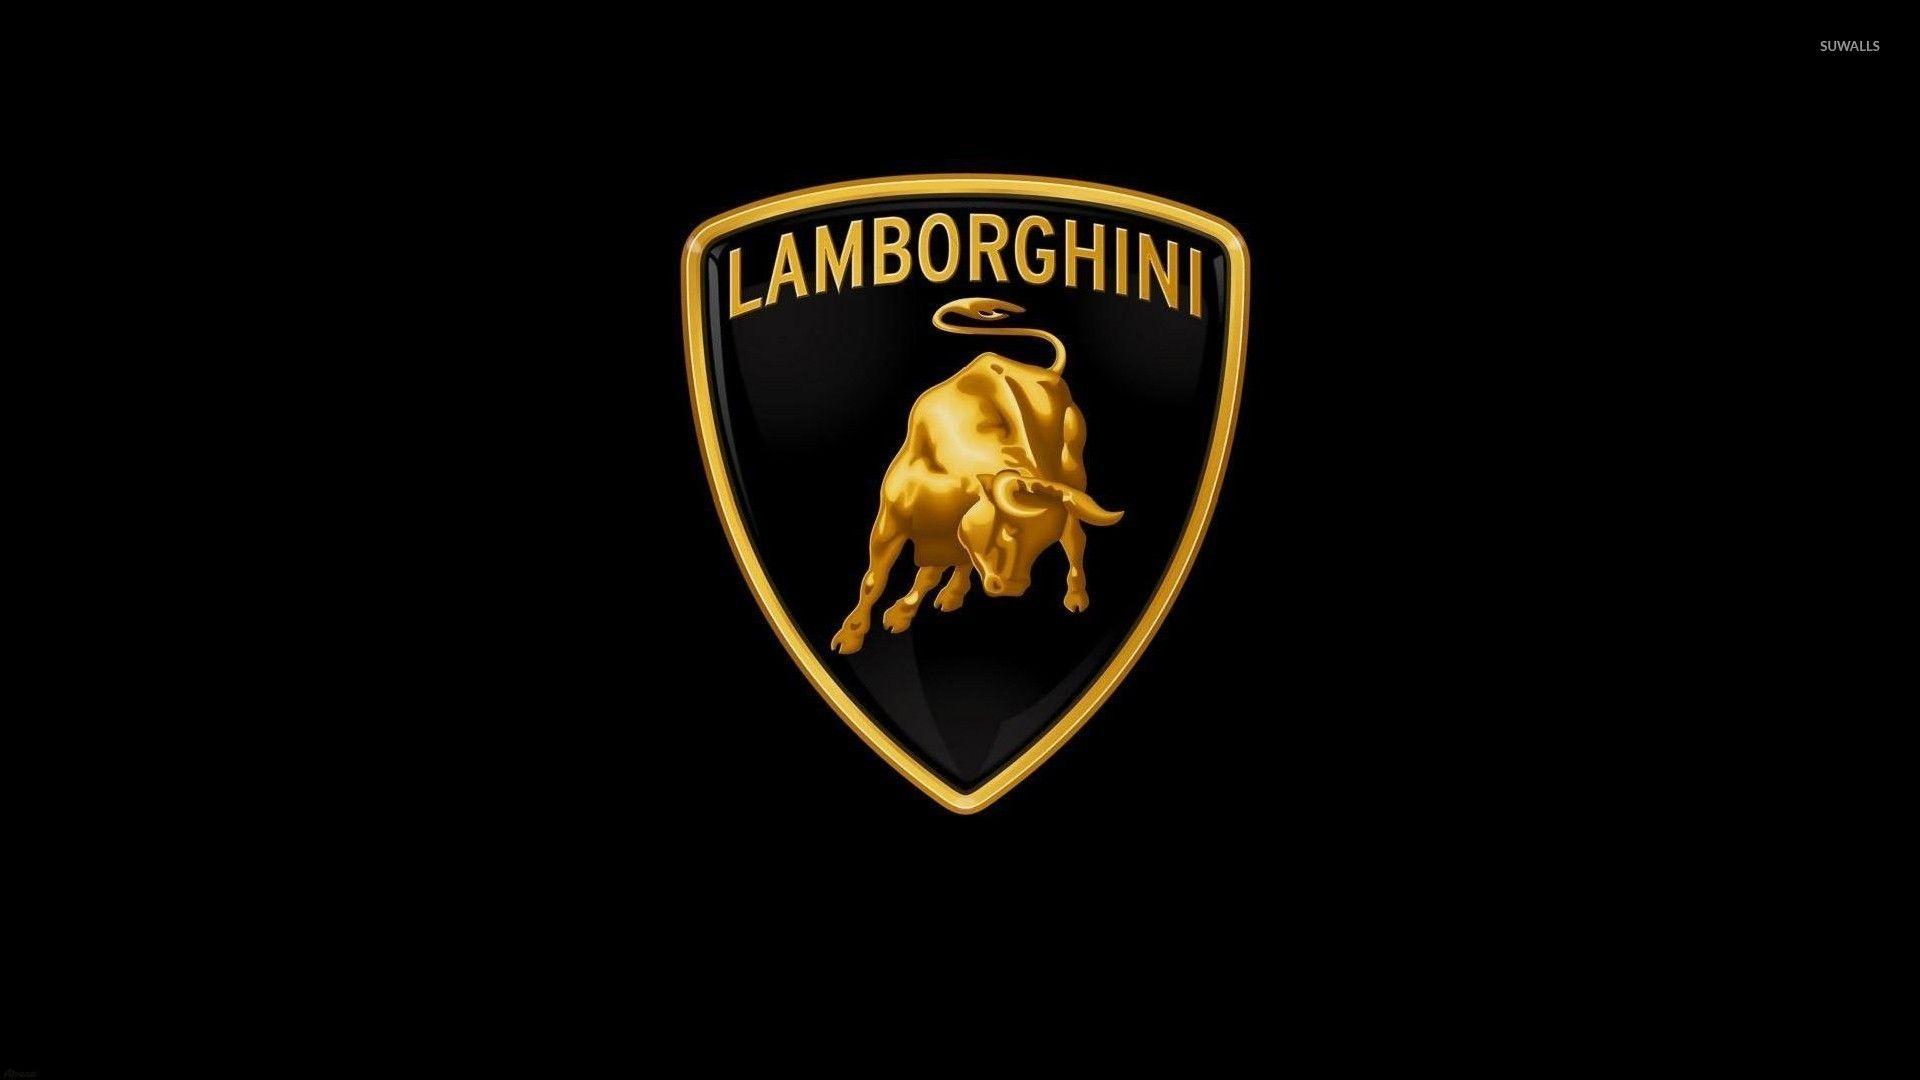 Lamborghini Logo Wallpaper background picture